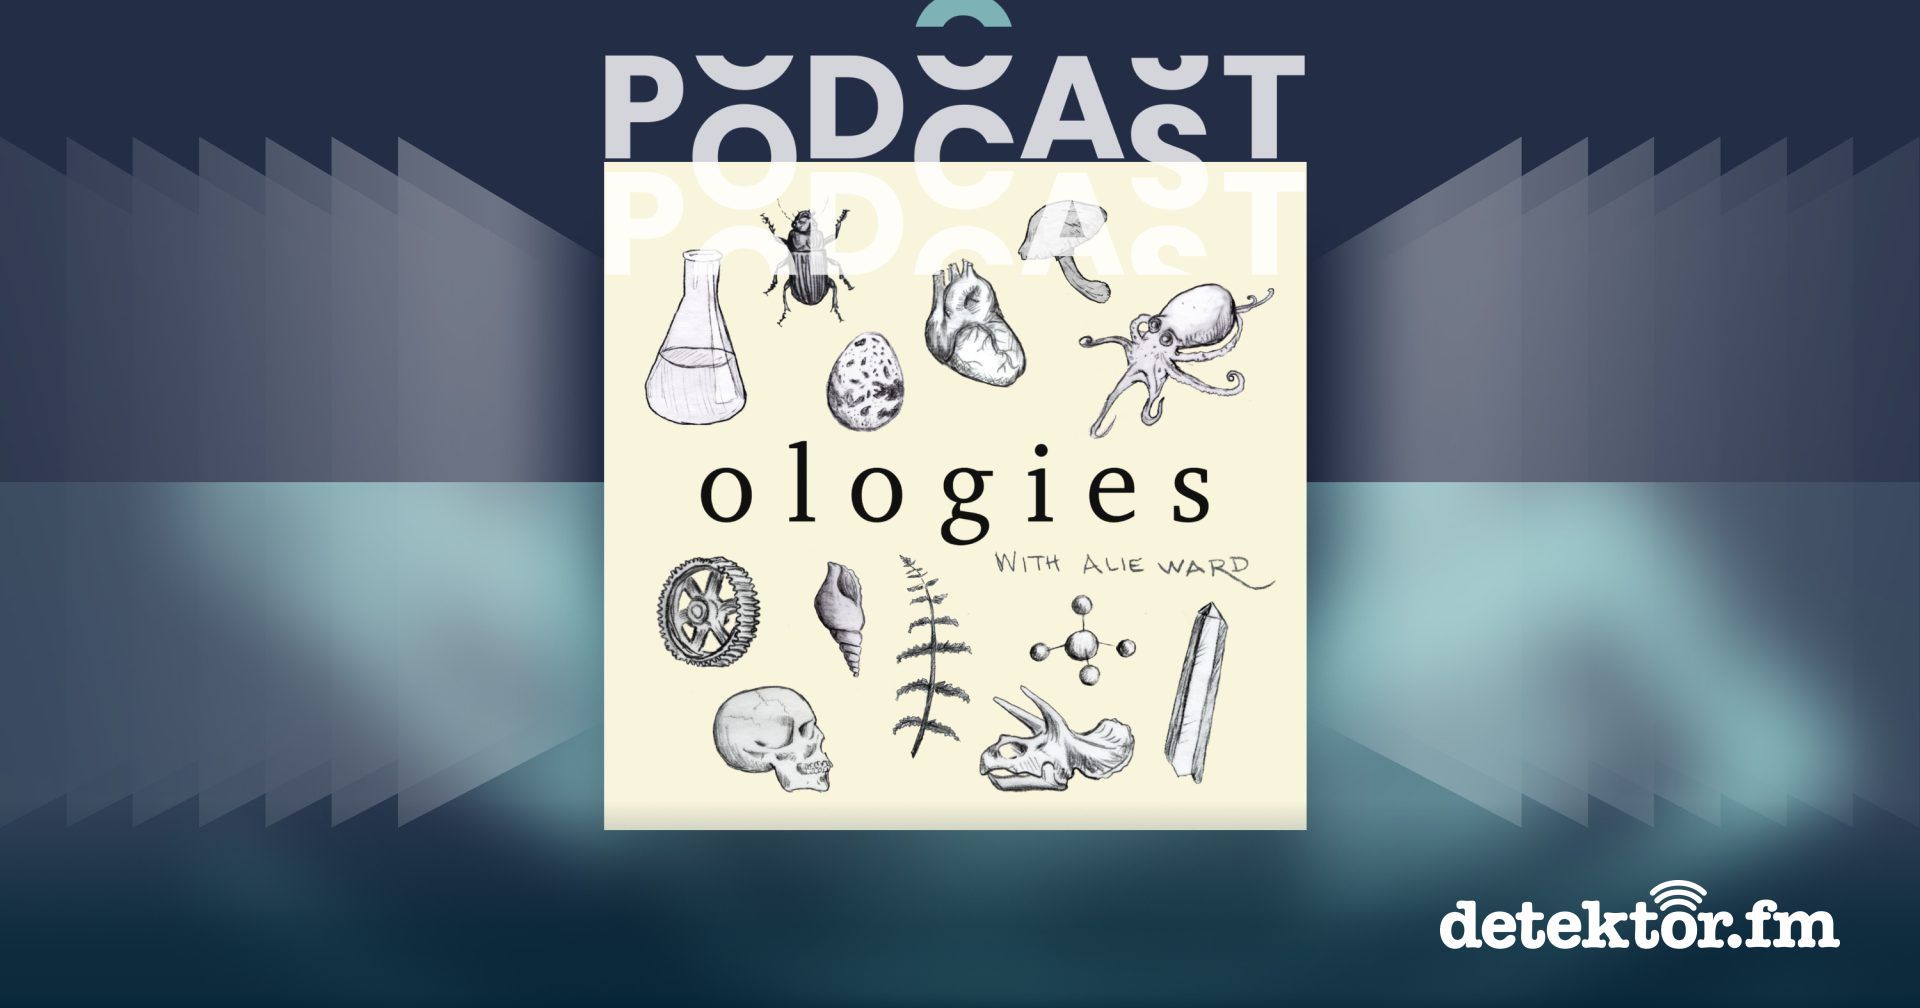 Ologies - with Alie Ward - Klugen Menschen dumme Fragen stellen | PodcastPodcast | detektor.fm - Das Podcast-Radio